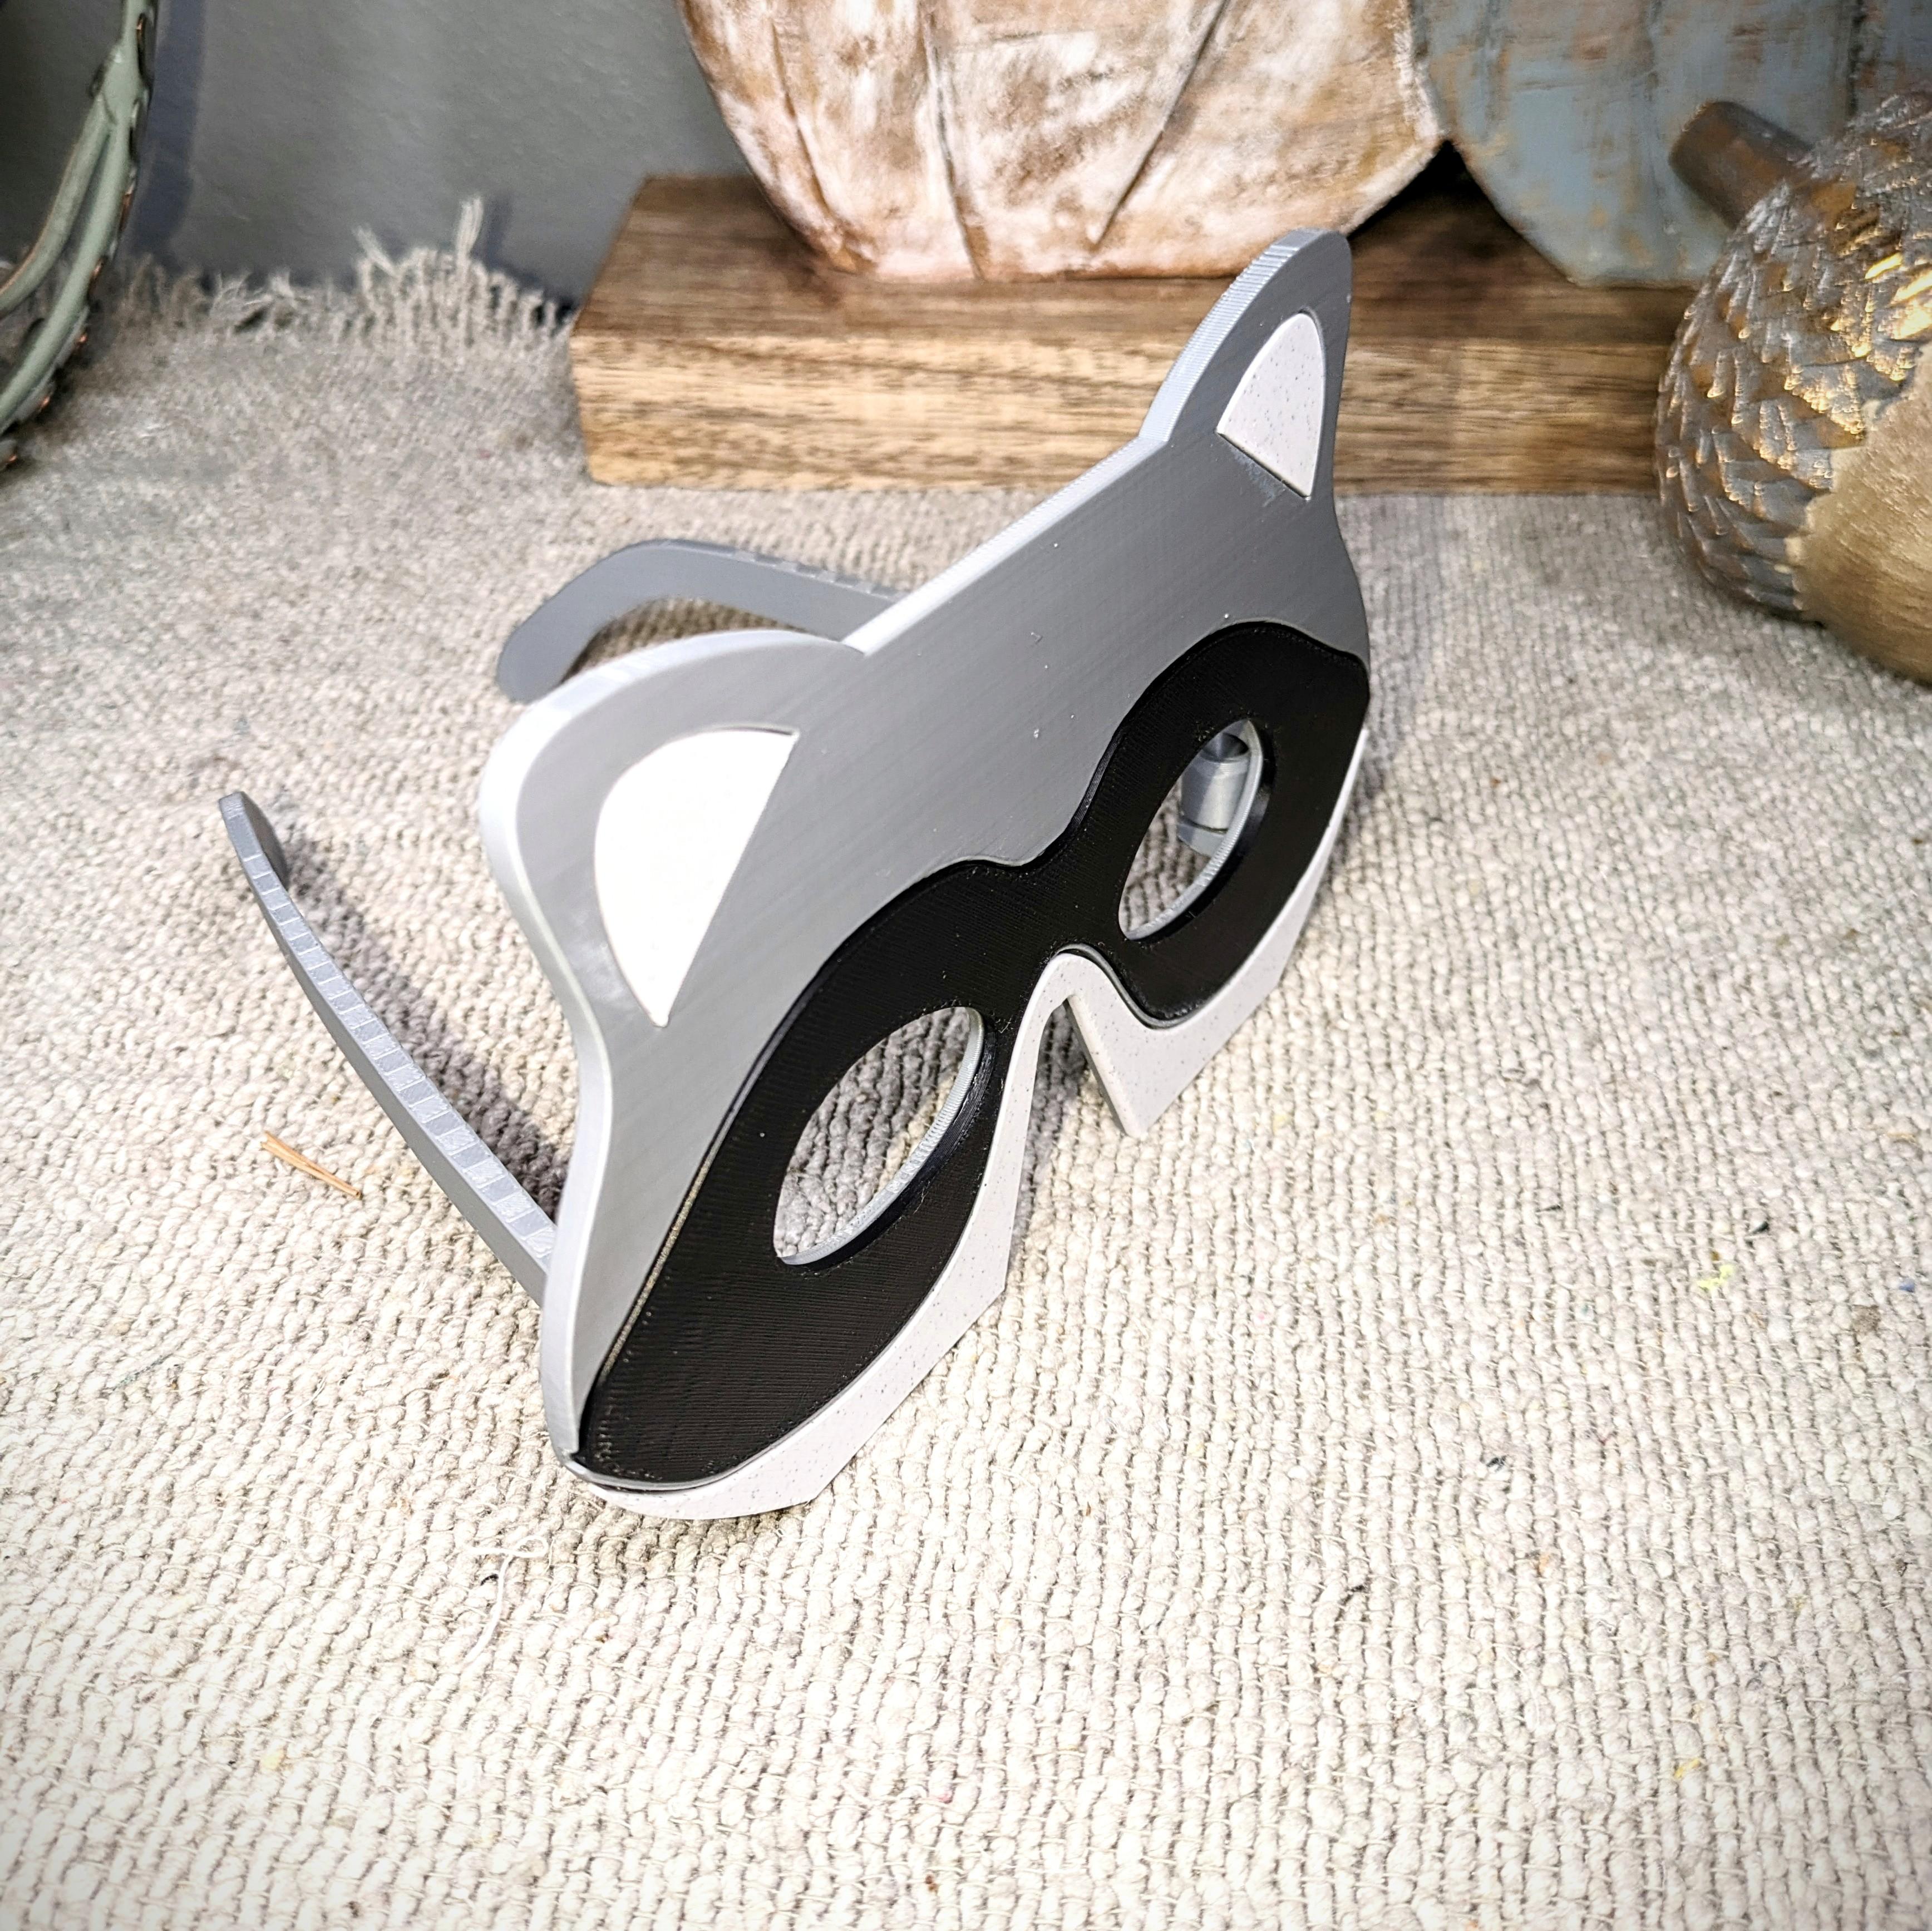 Raccoon Glasses/Mask 3d model